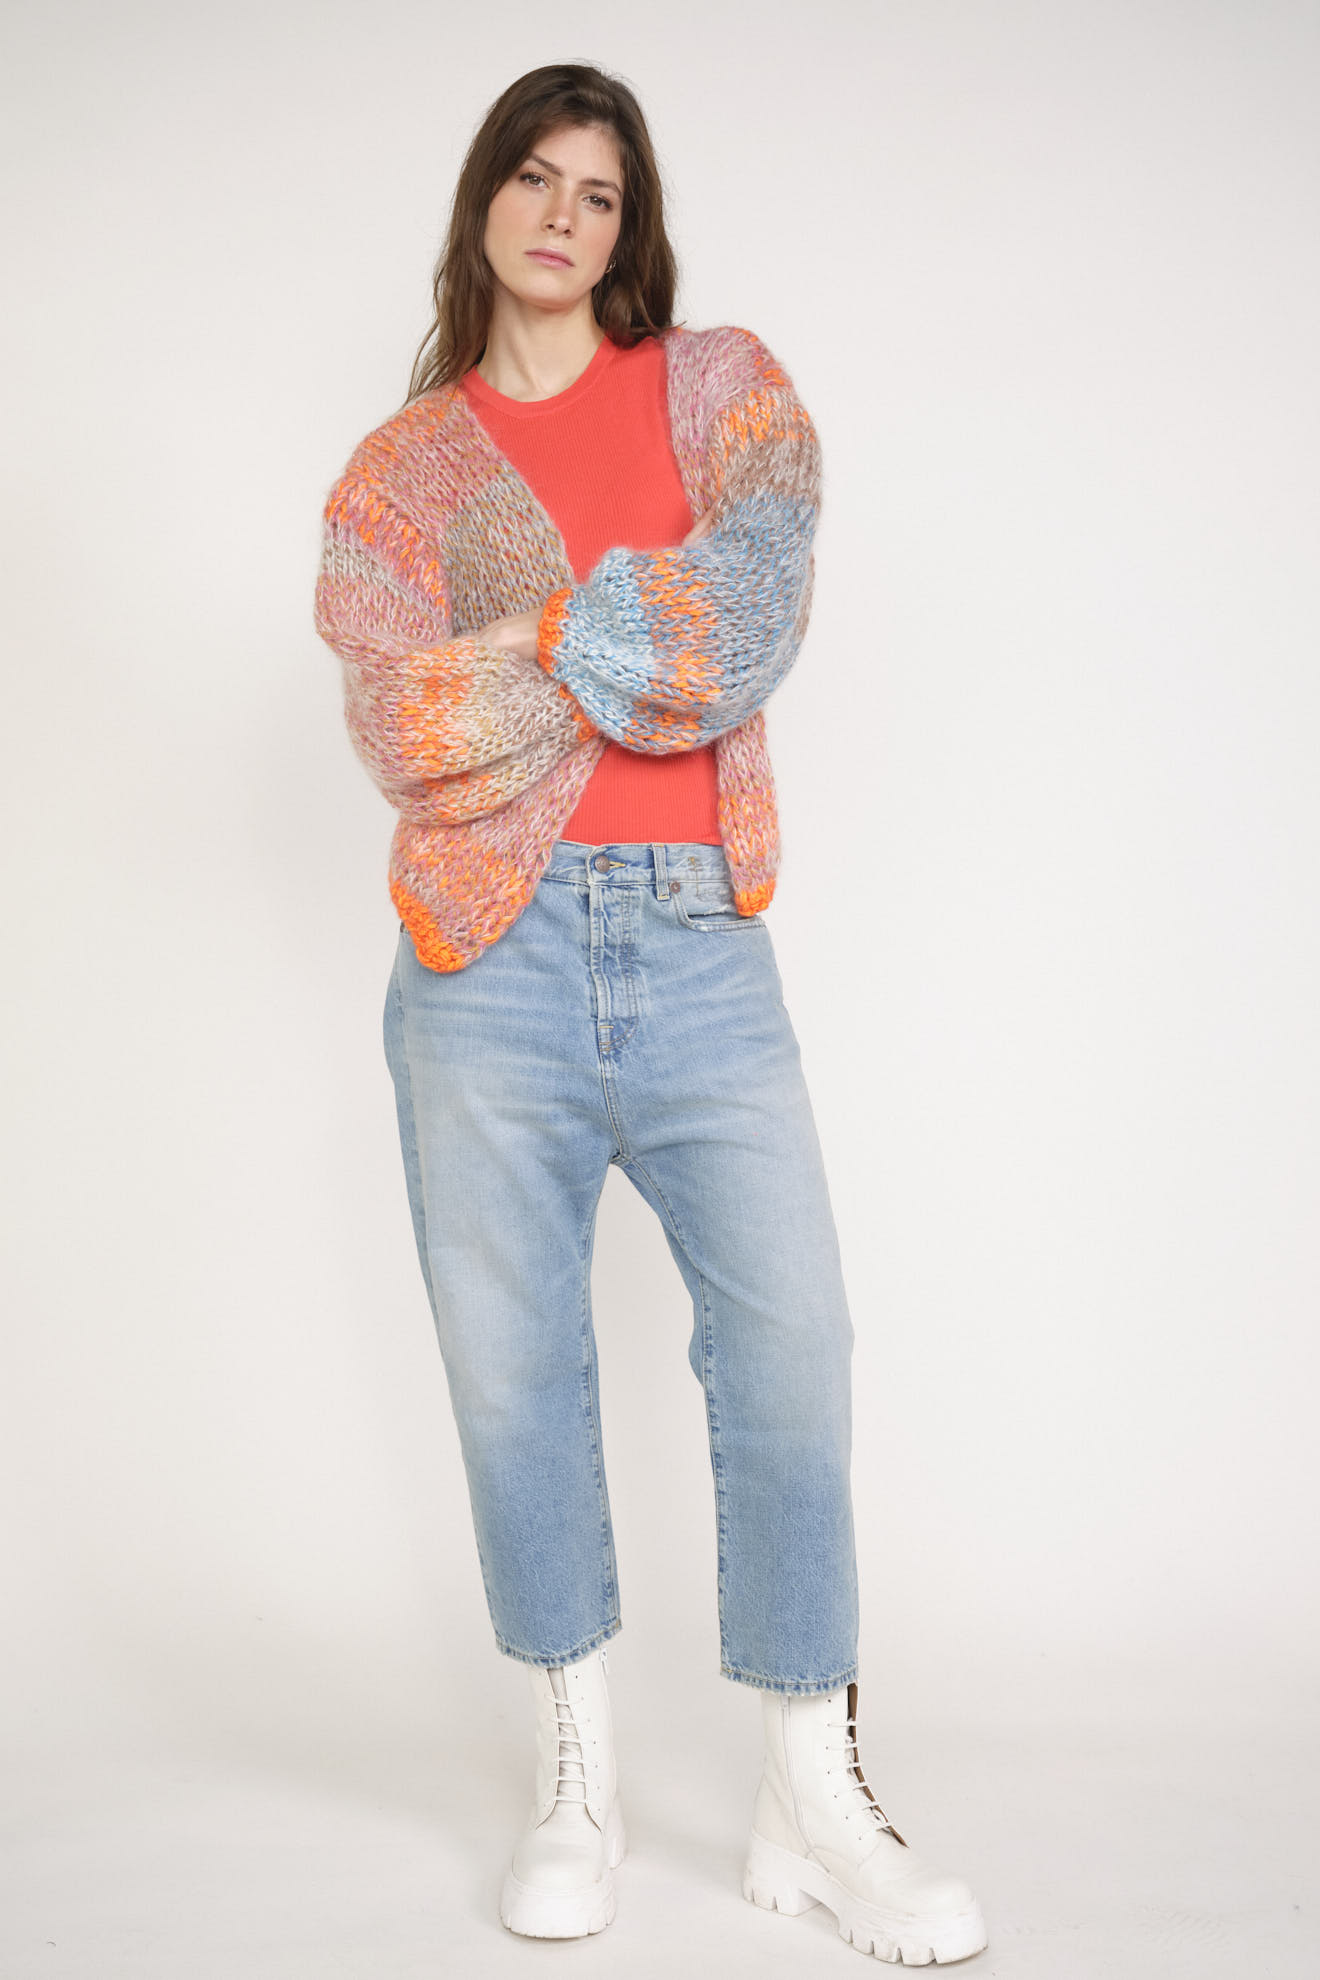 Mia Cardigan - Cardigan in maglia grossa con maniche a palloncino multicolore Taglia unica